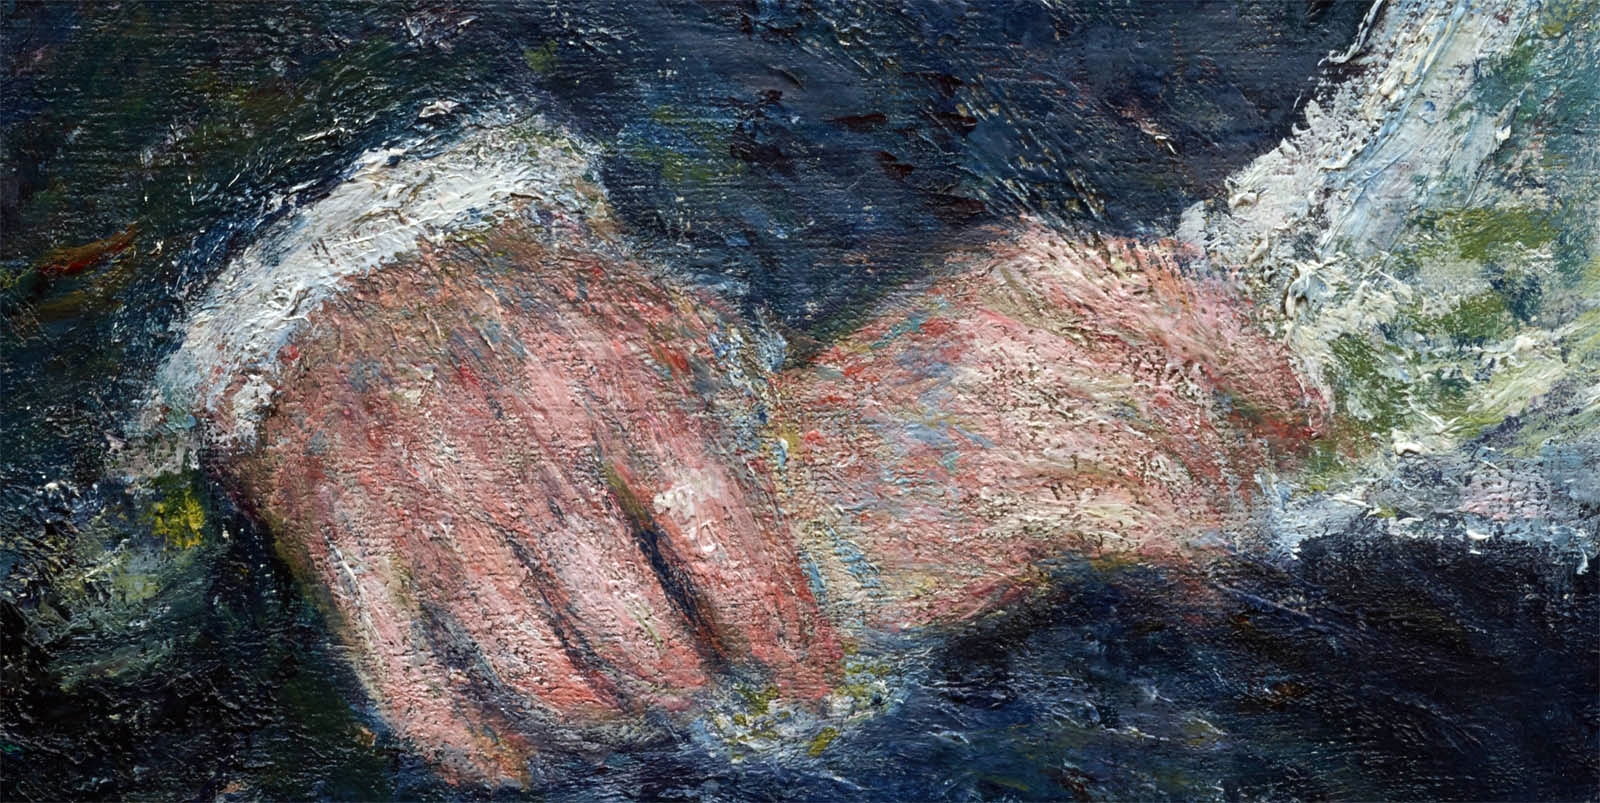 Pierre+Auguste+Renoir-1841-1-19 (973).jpg